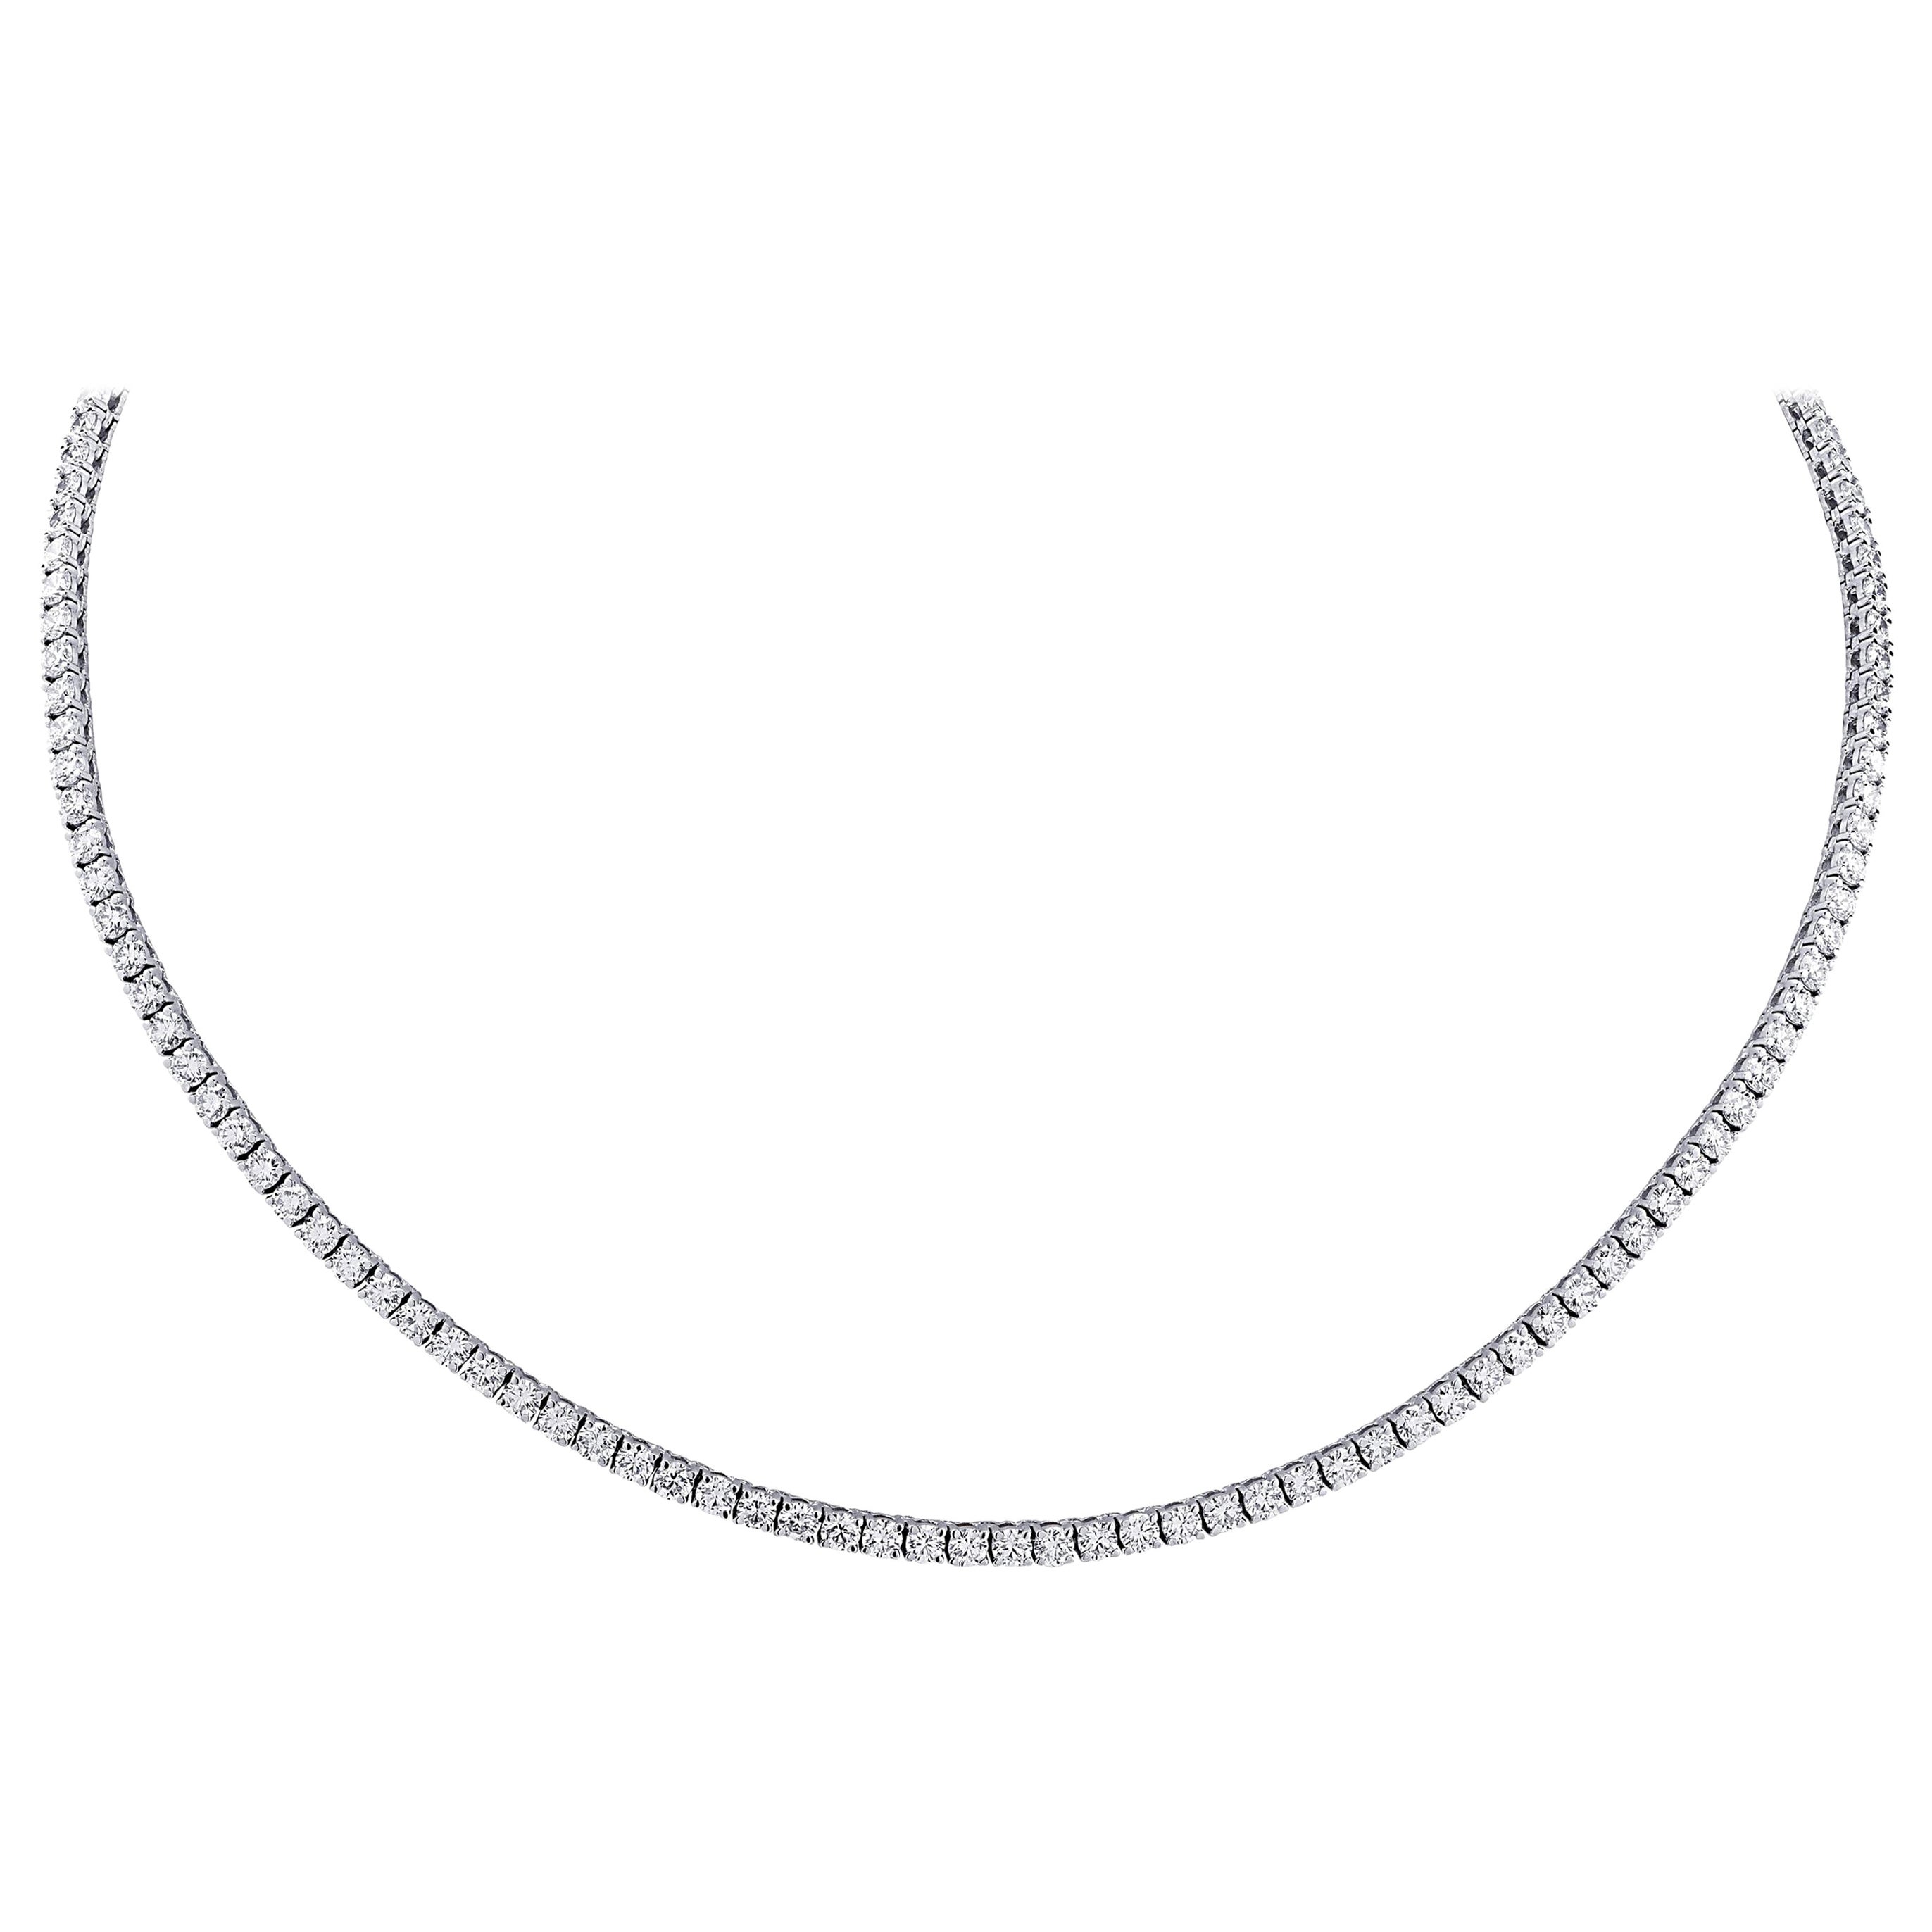 Vivid Diamonds 9.37 Carat Straight Line Diamond Tennis Necklace